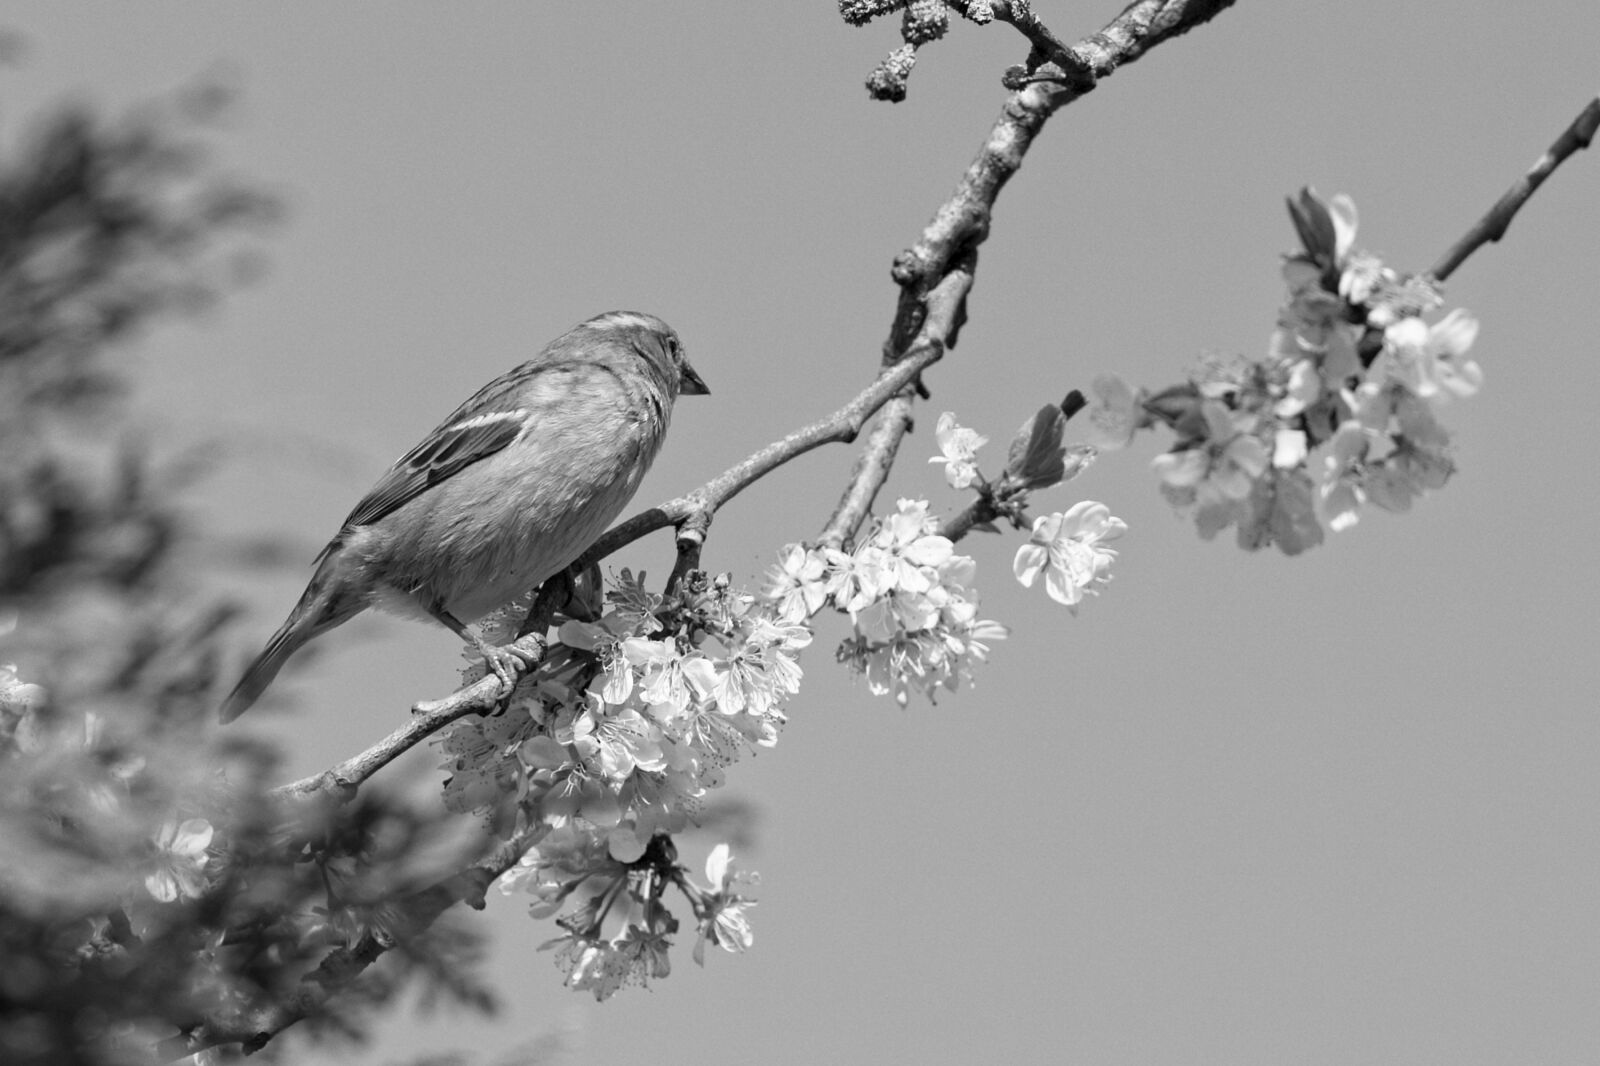 Canon EOS R sample photo. Mus, spring, bird photography